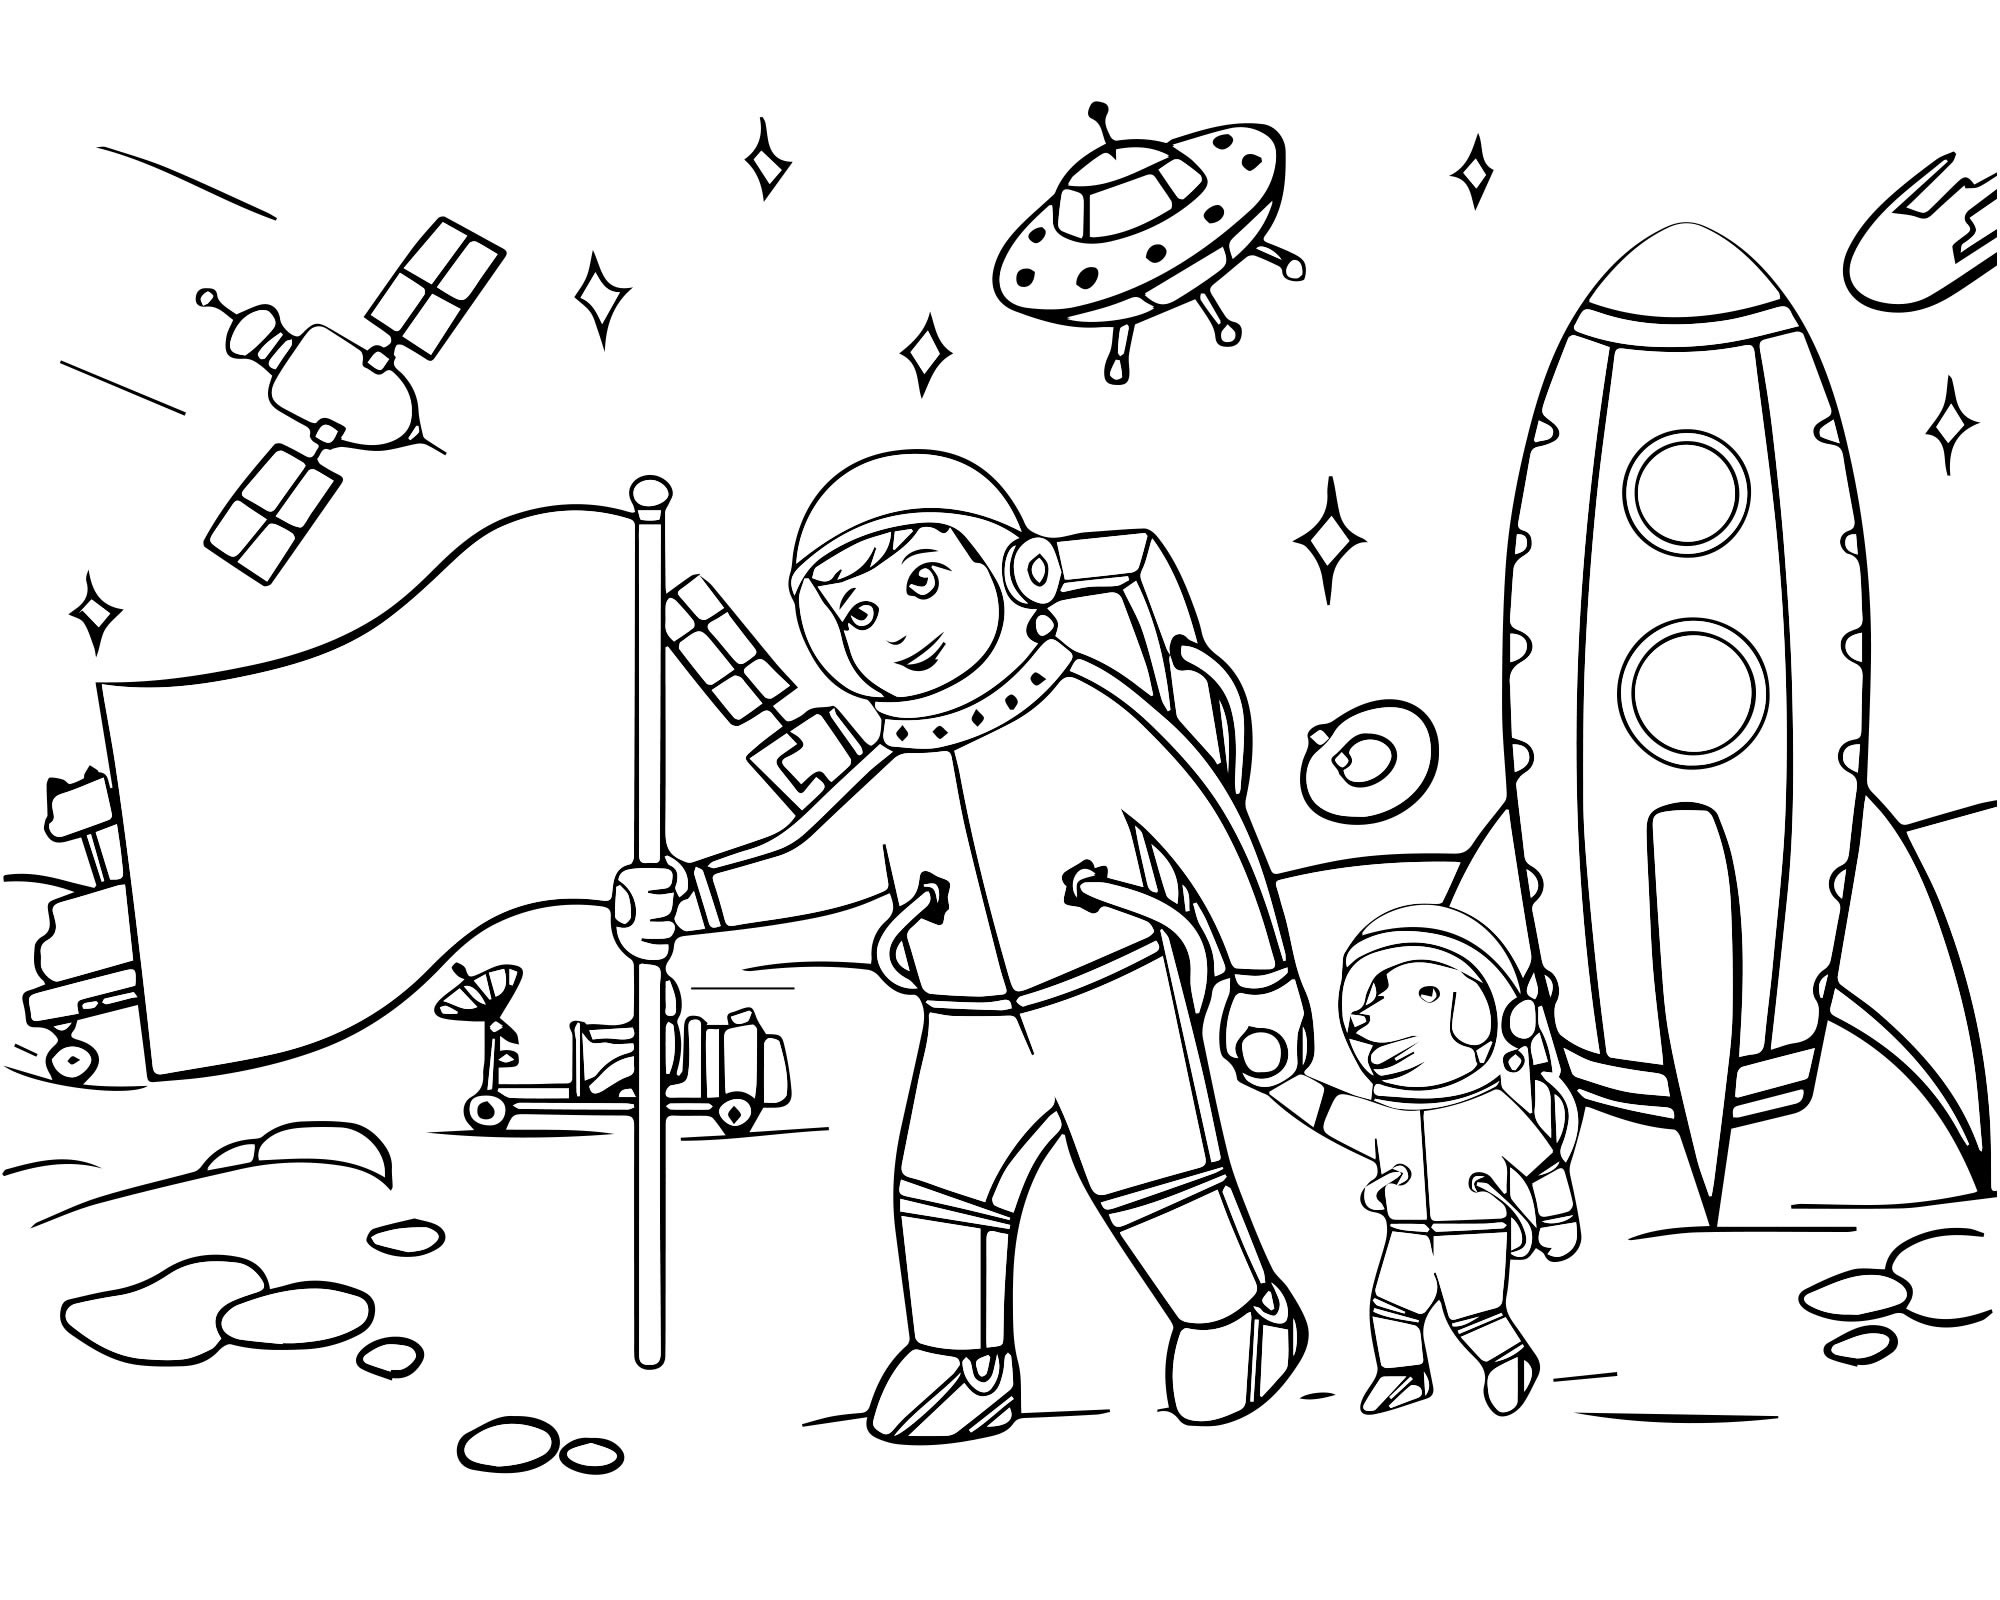 Картинки ко дню космонавтики для детей. Раскраска. В космосе. Космос раскраска для детей. Раскраска день космонавтики для детей. Космические раскраски для детей.